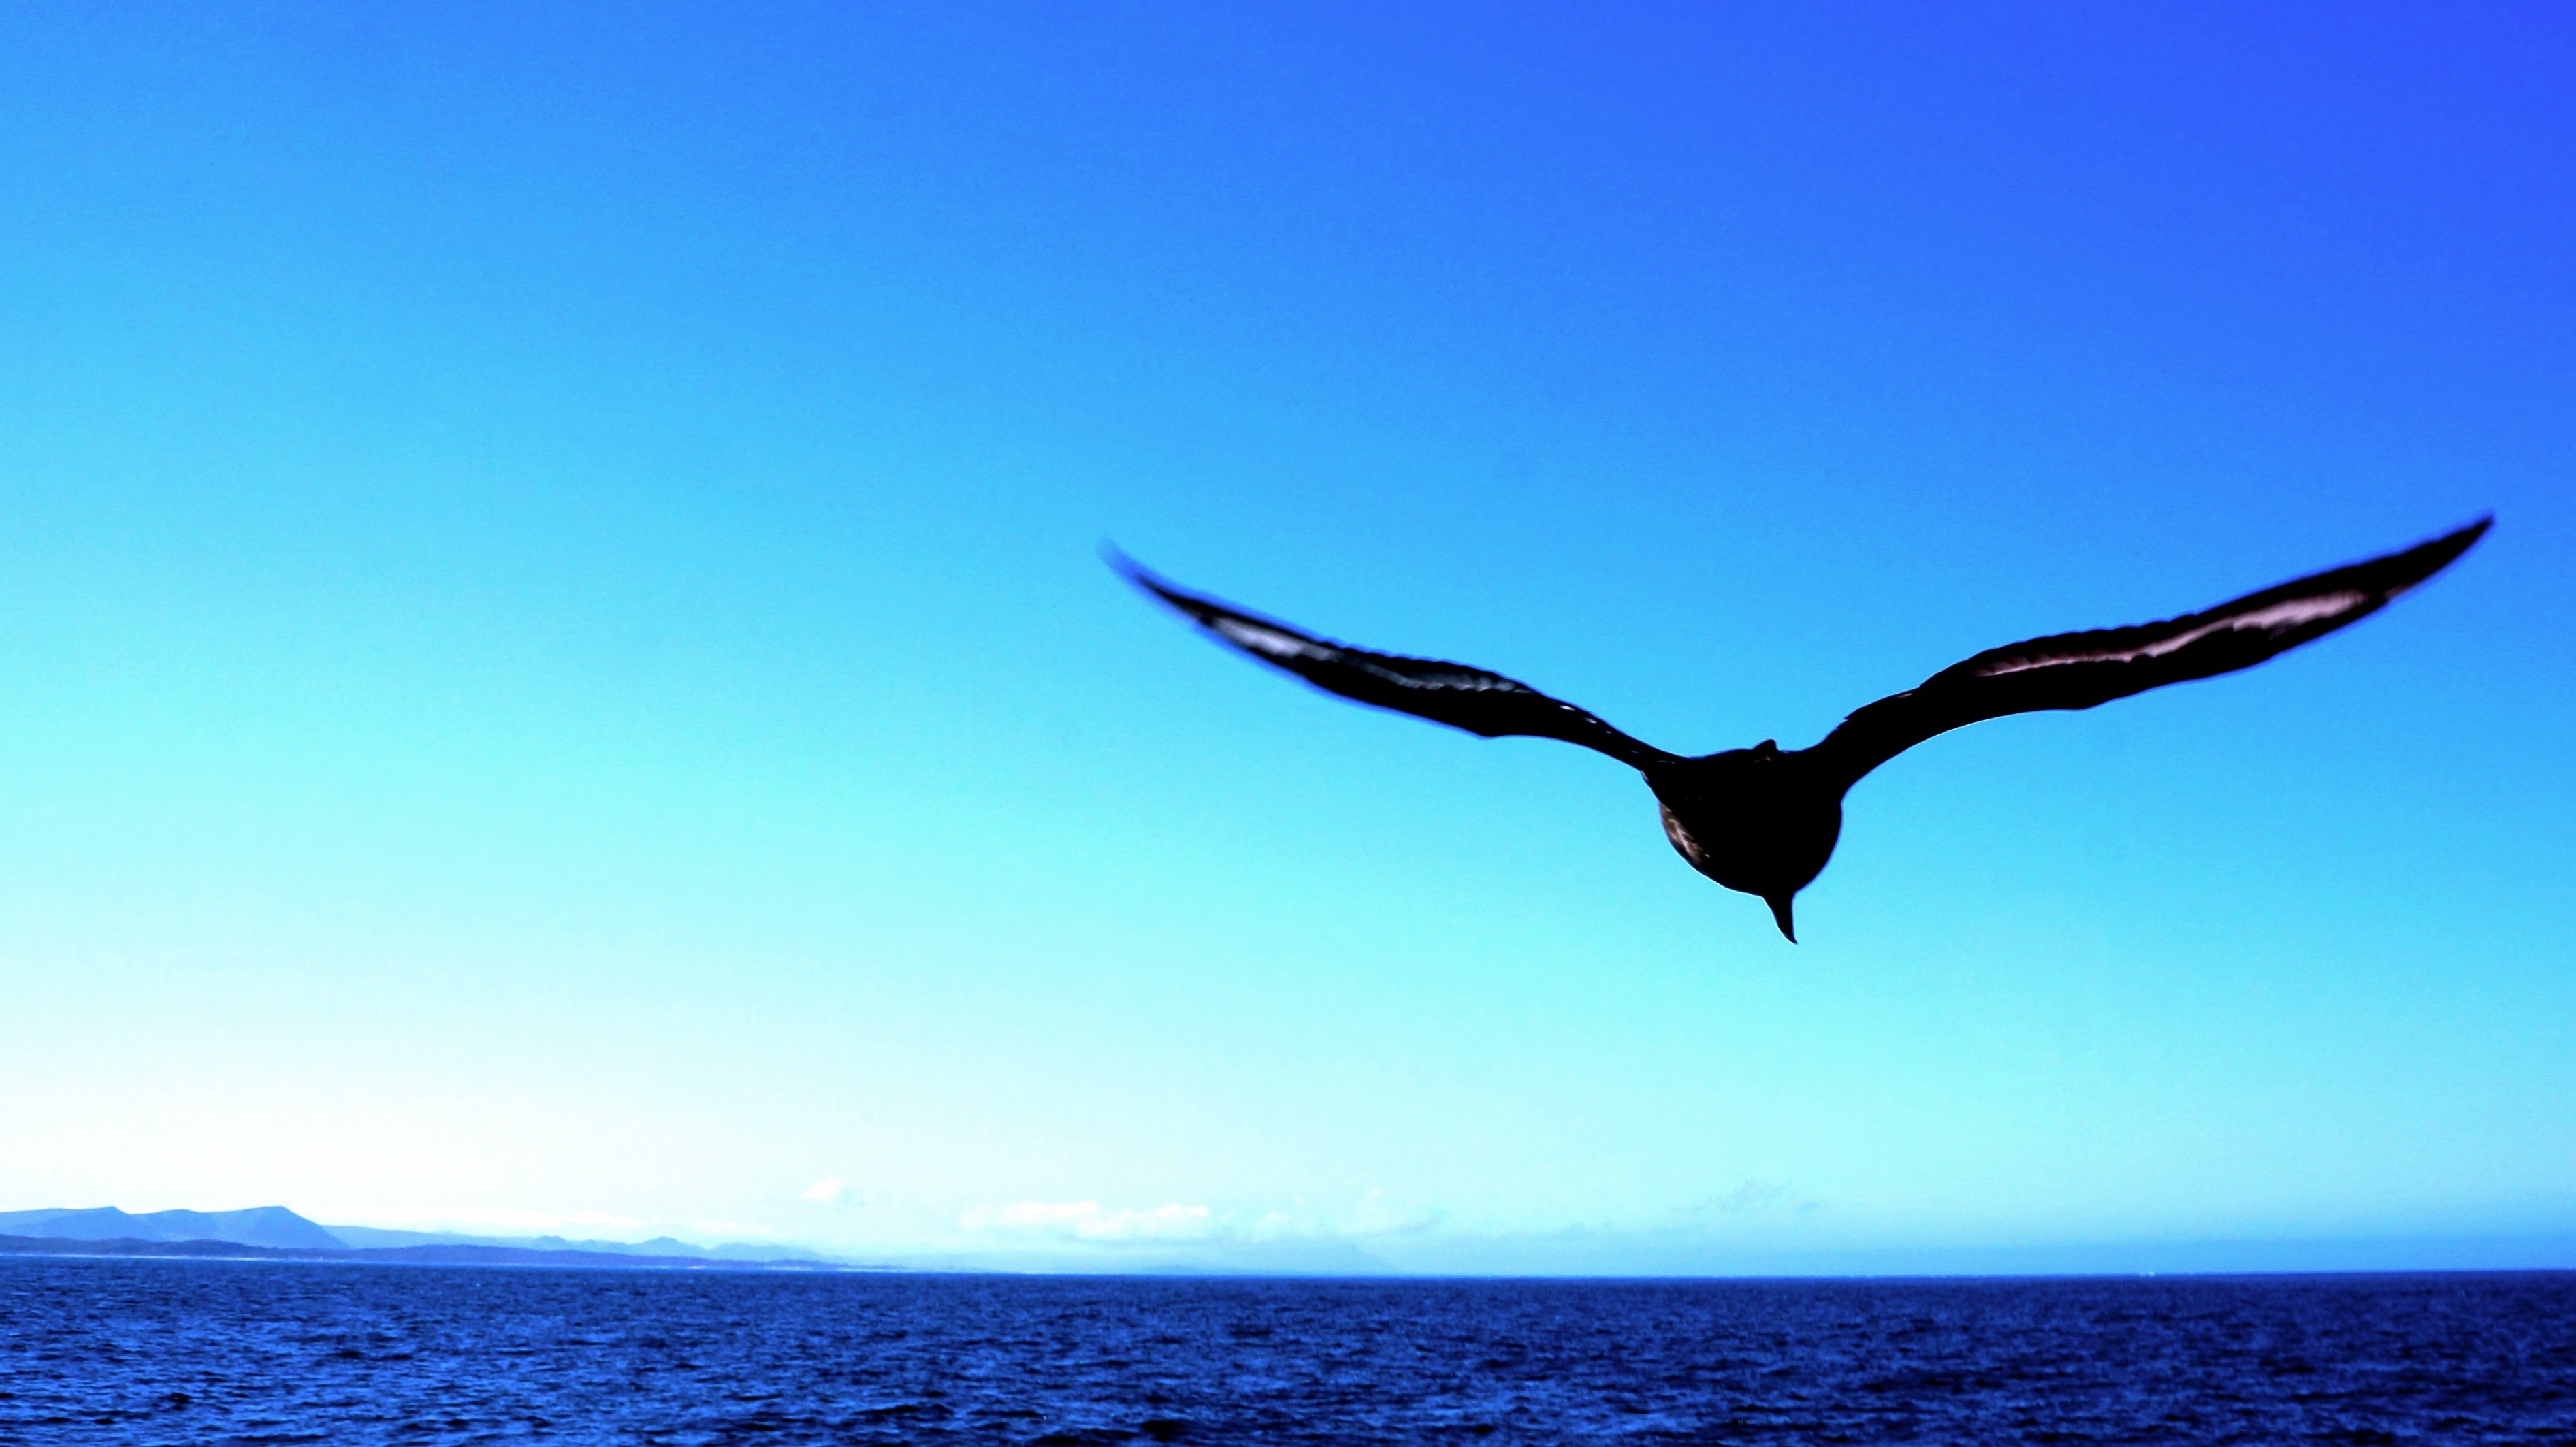 Автономная свобода. Птицы над морем. Полет птицы над морем. Чайки над морем. Птица в полете над морем.